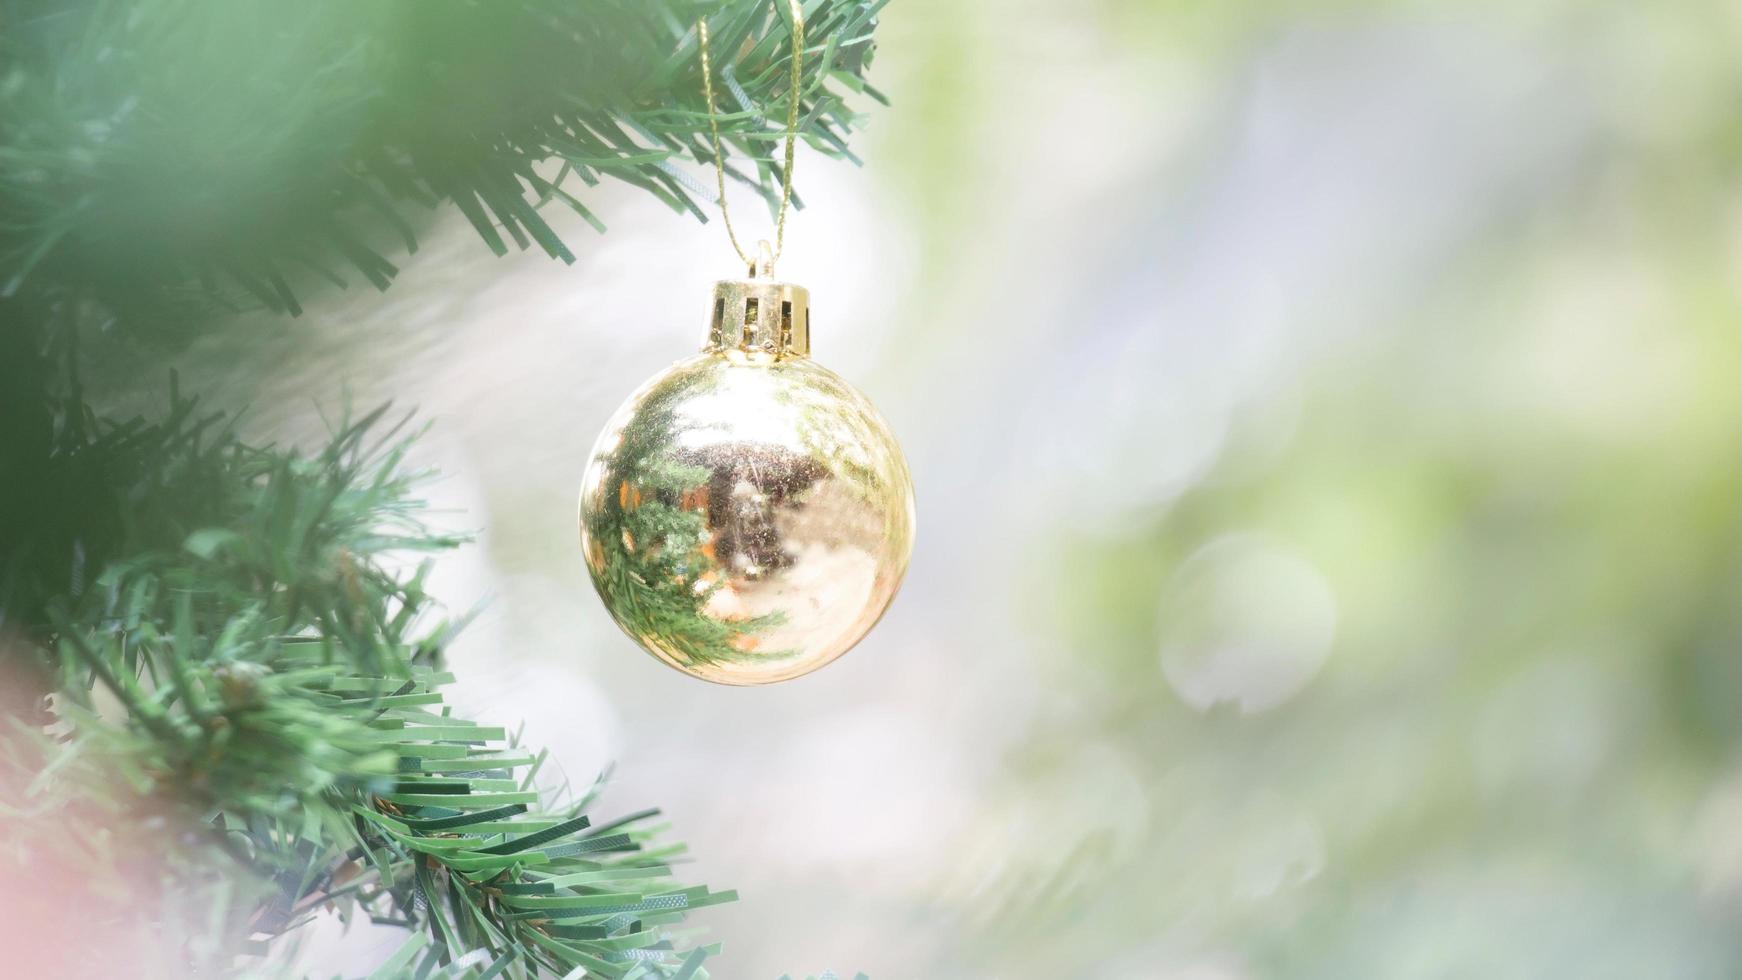 dichtbij omhoog van goud bal voor Kerstmis of nieuw jaar decoratie achtergrond foto